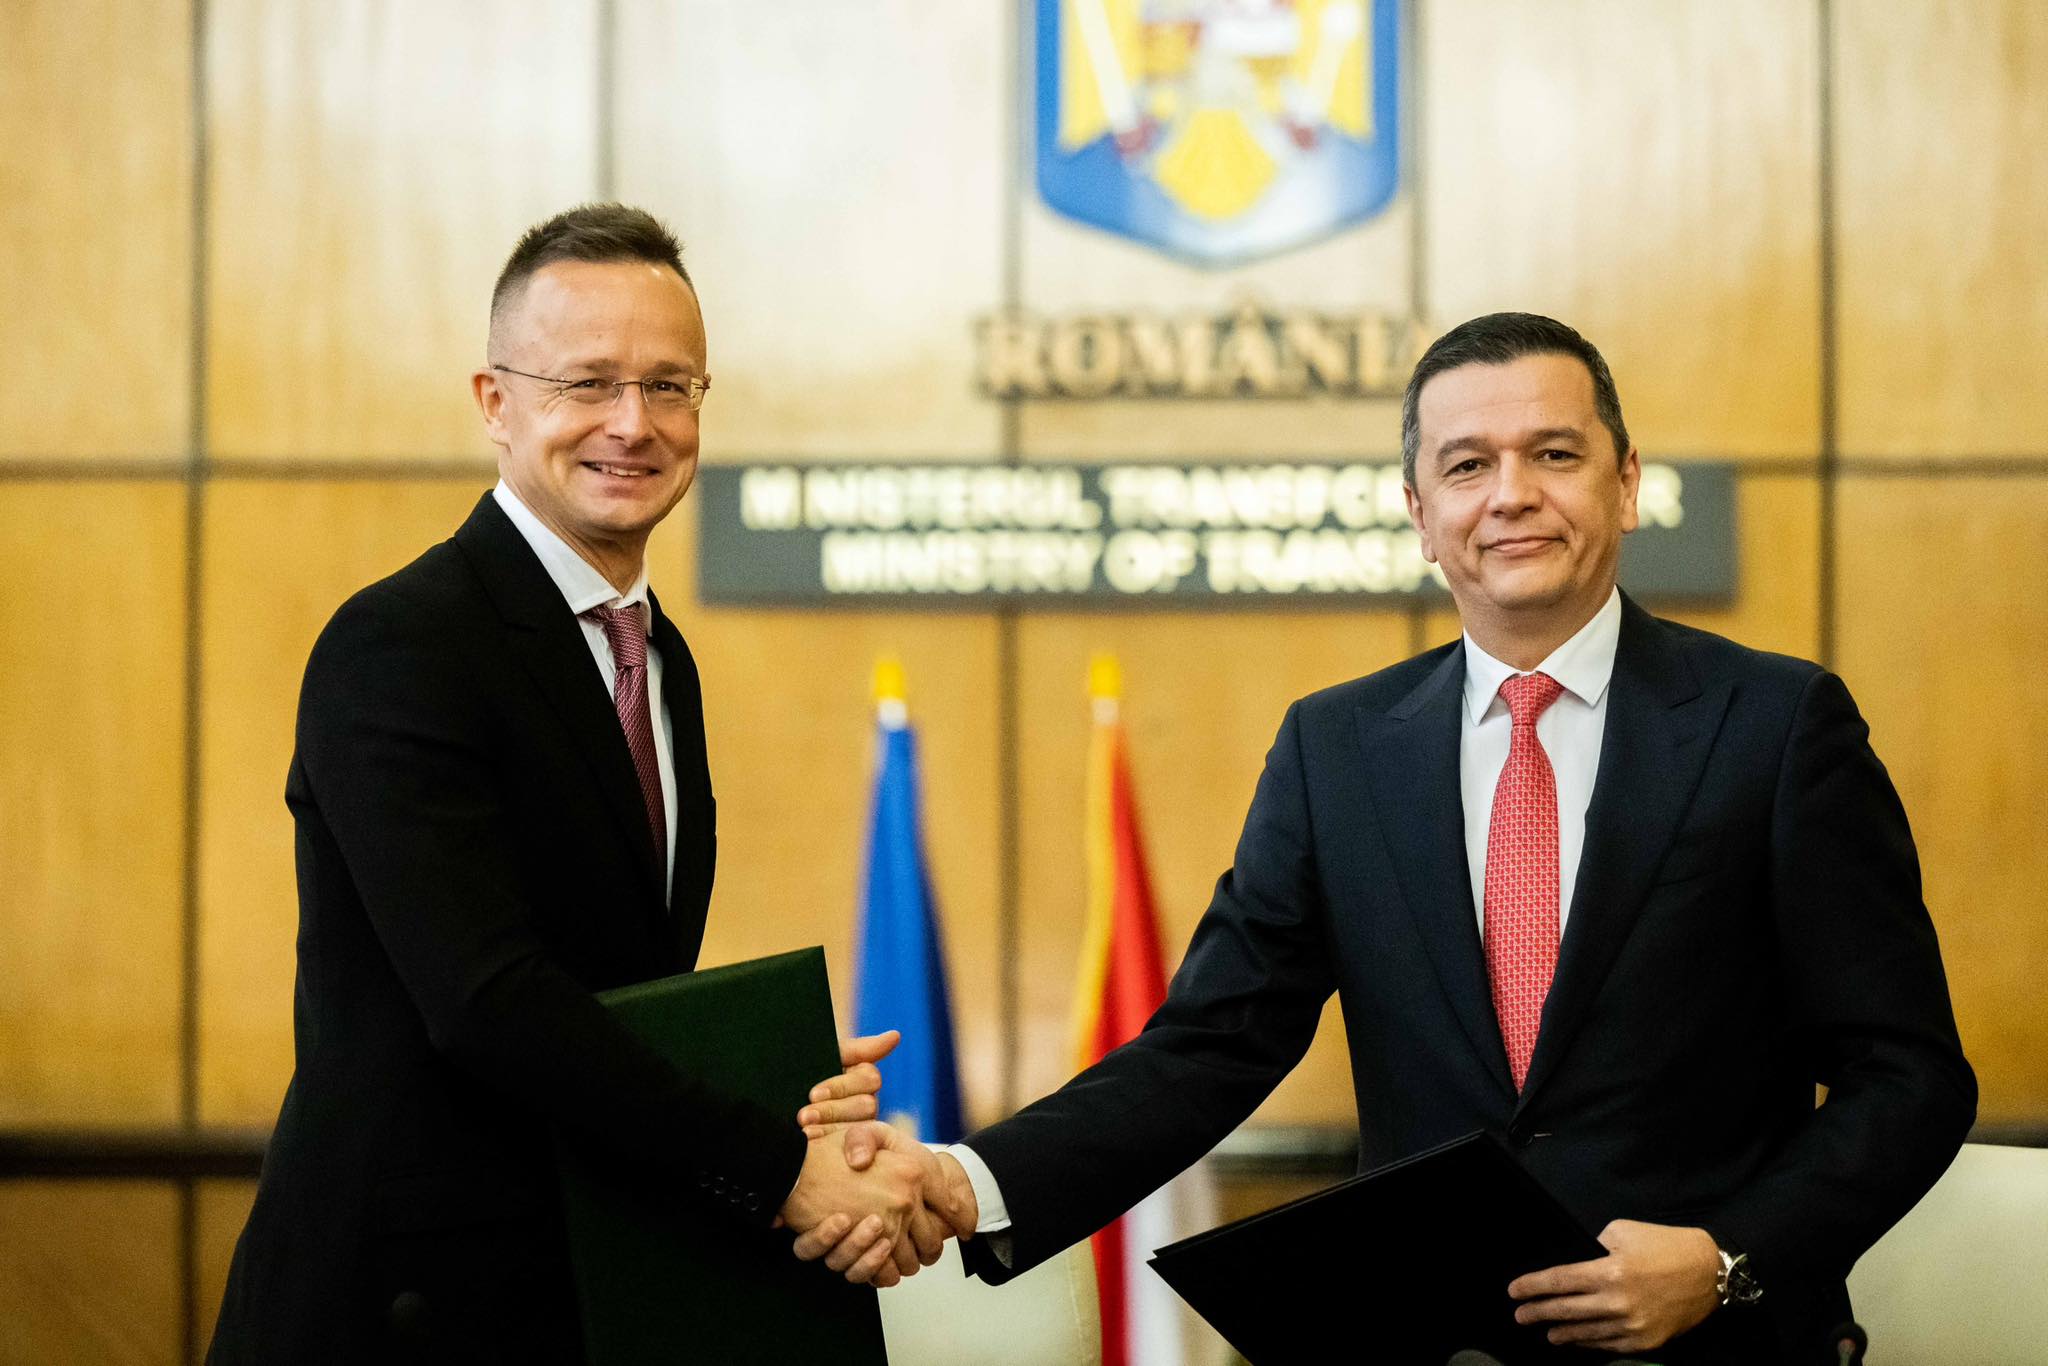 Új gyorsforgalmi összeköttetést nyit Magyarország és Románia